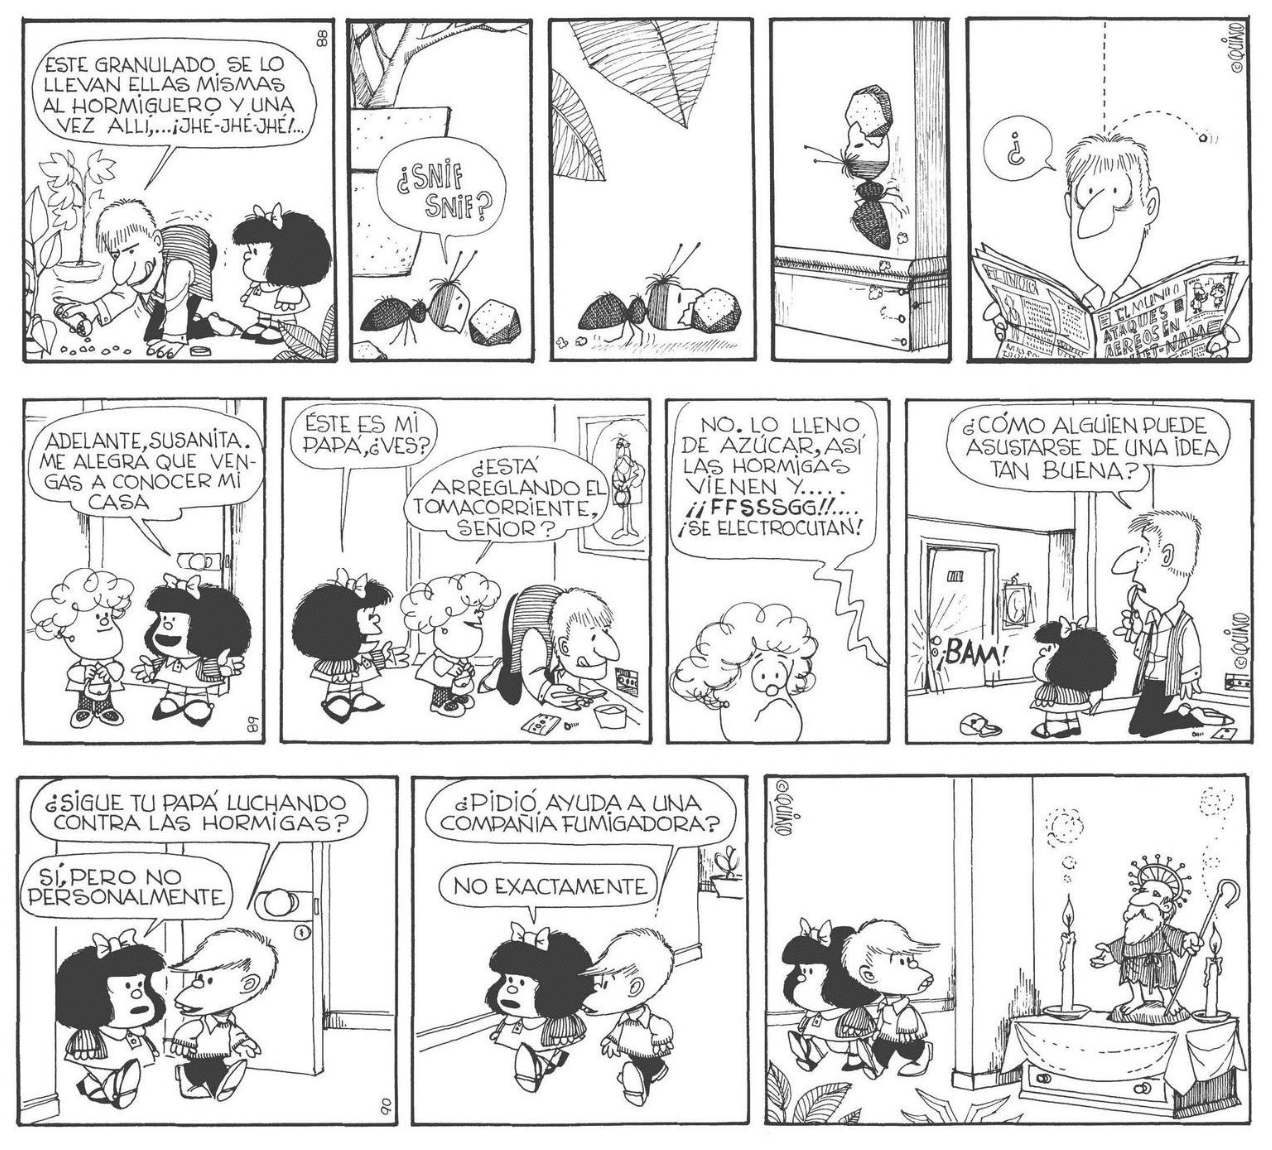 Los invidentes también podrán disfrutar de los cómic de Mafalda, ¡por fin en braille! 30